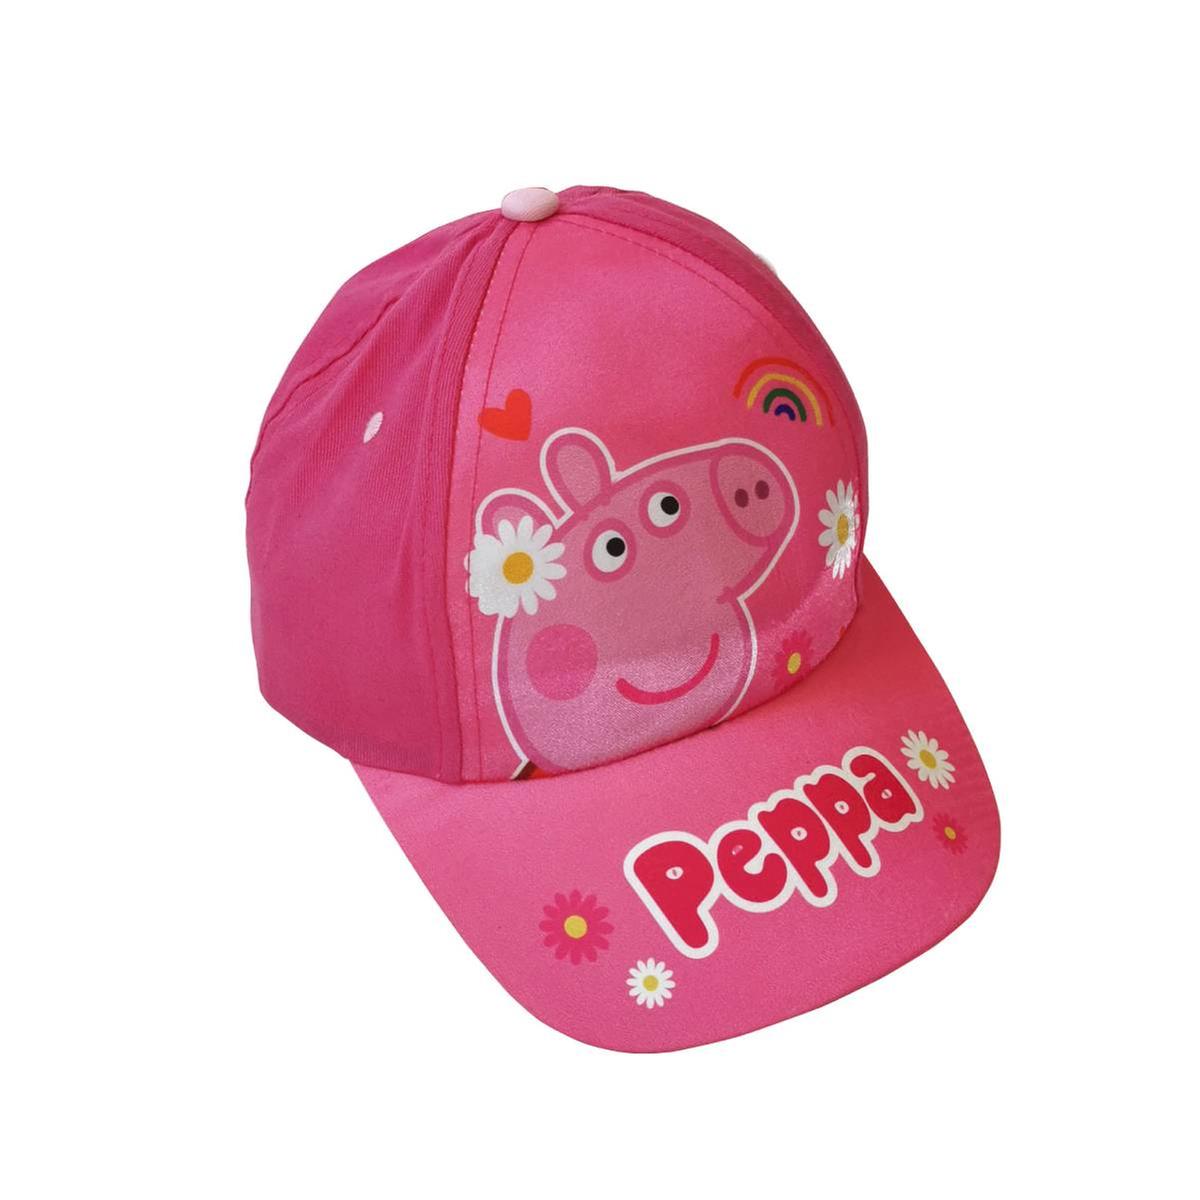 Gorros Cono Peppa Pig (6)✔️ por sólo 3,38 €. Envío en 24h